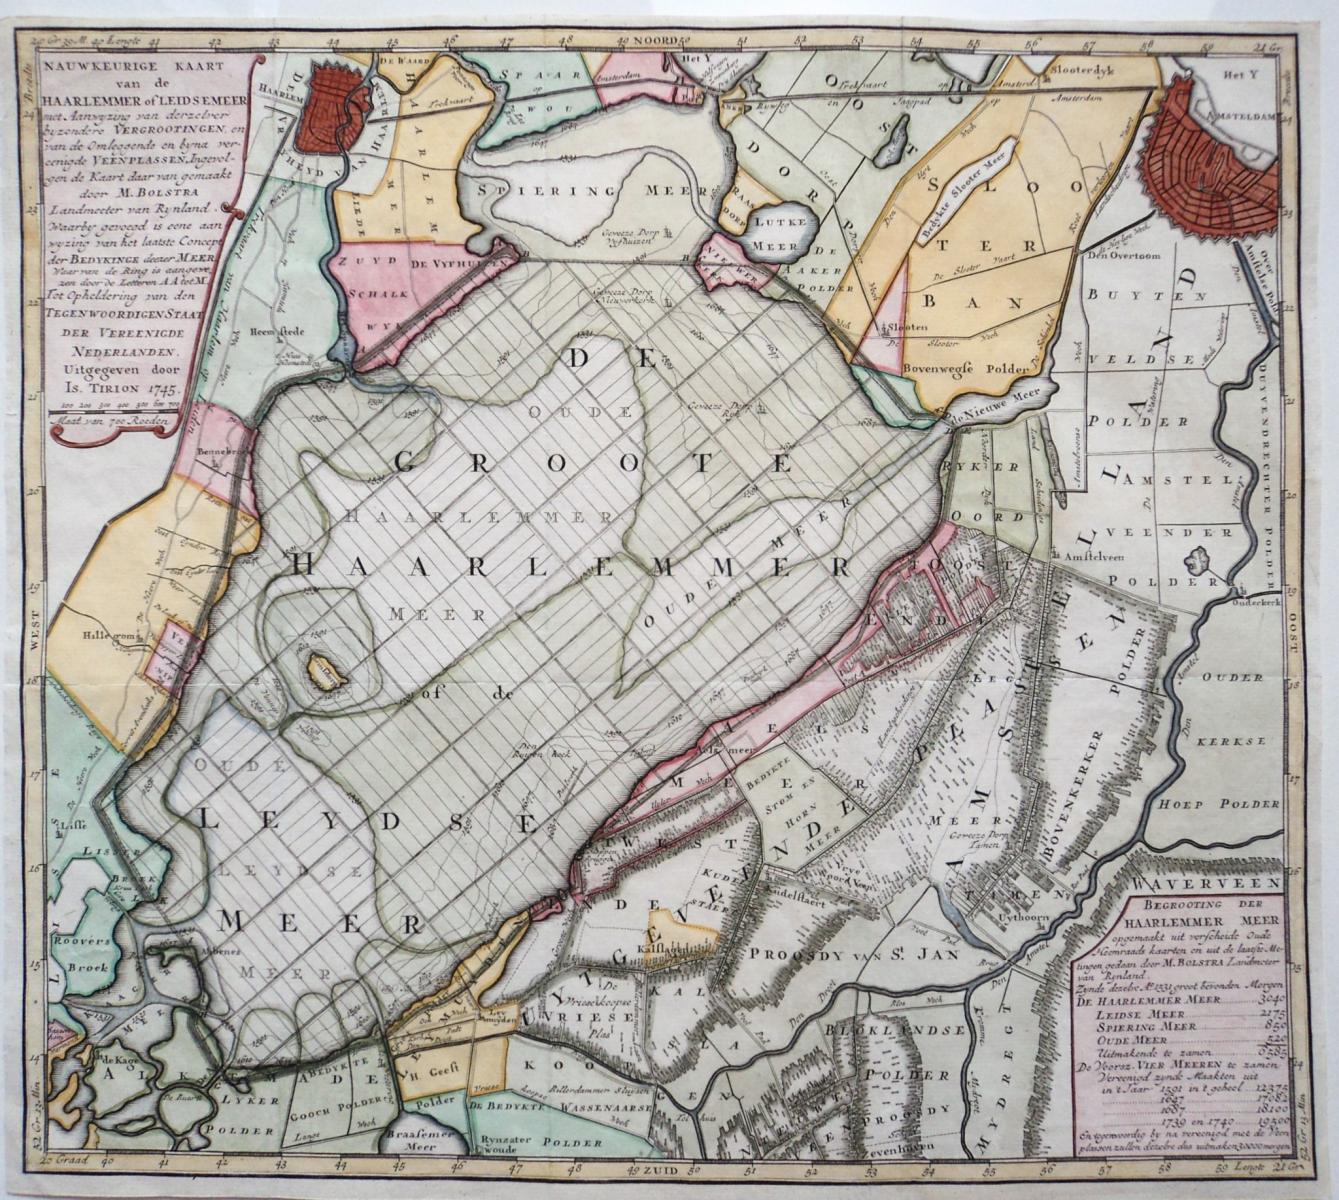 Map of Haarlemmermeer by Isaak Tirion in 1745